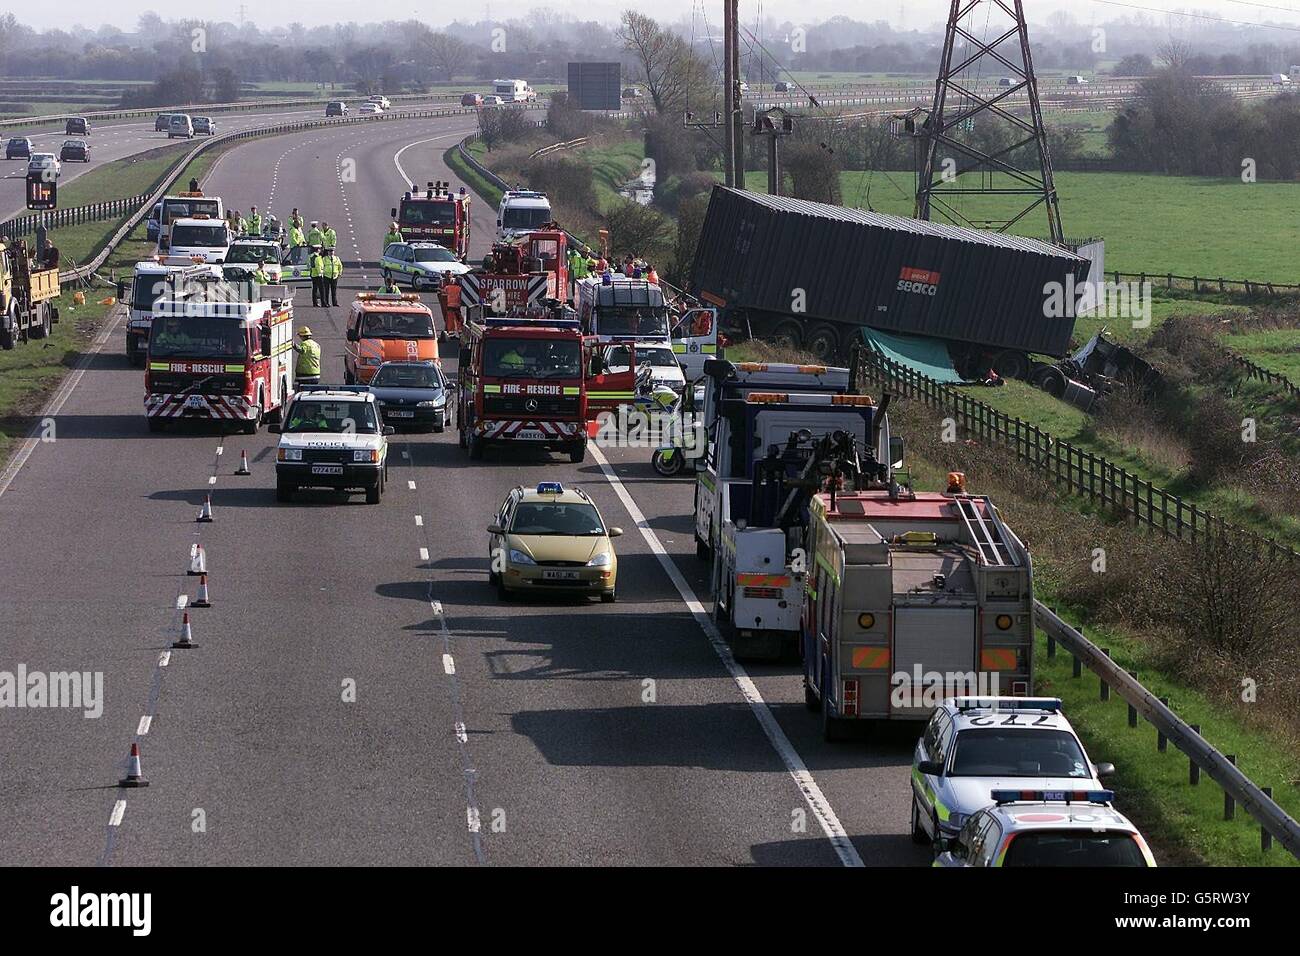 La police et les véhicules d'urgence ont dégagé l'accident qui a fermé la M5 en direction nord entre les jonctions 22 et 21 dans le Somerset nord. Banque D'Images